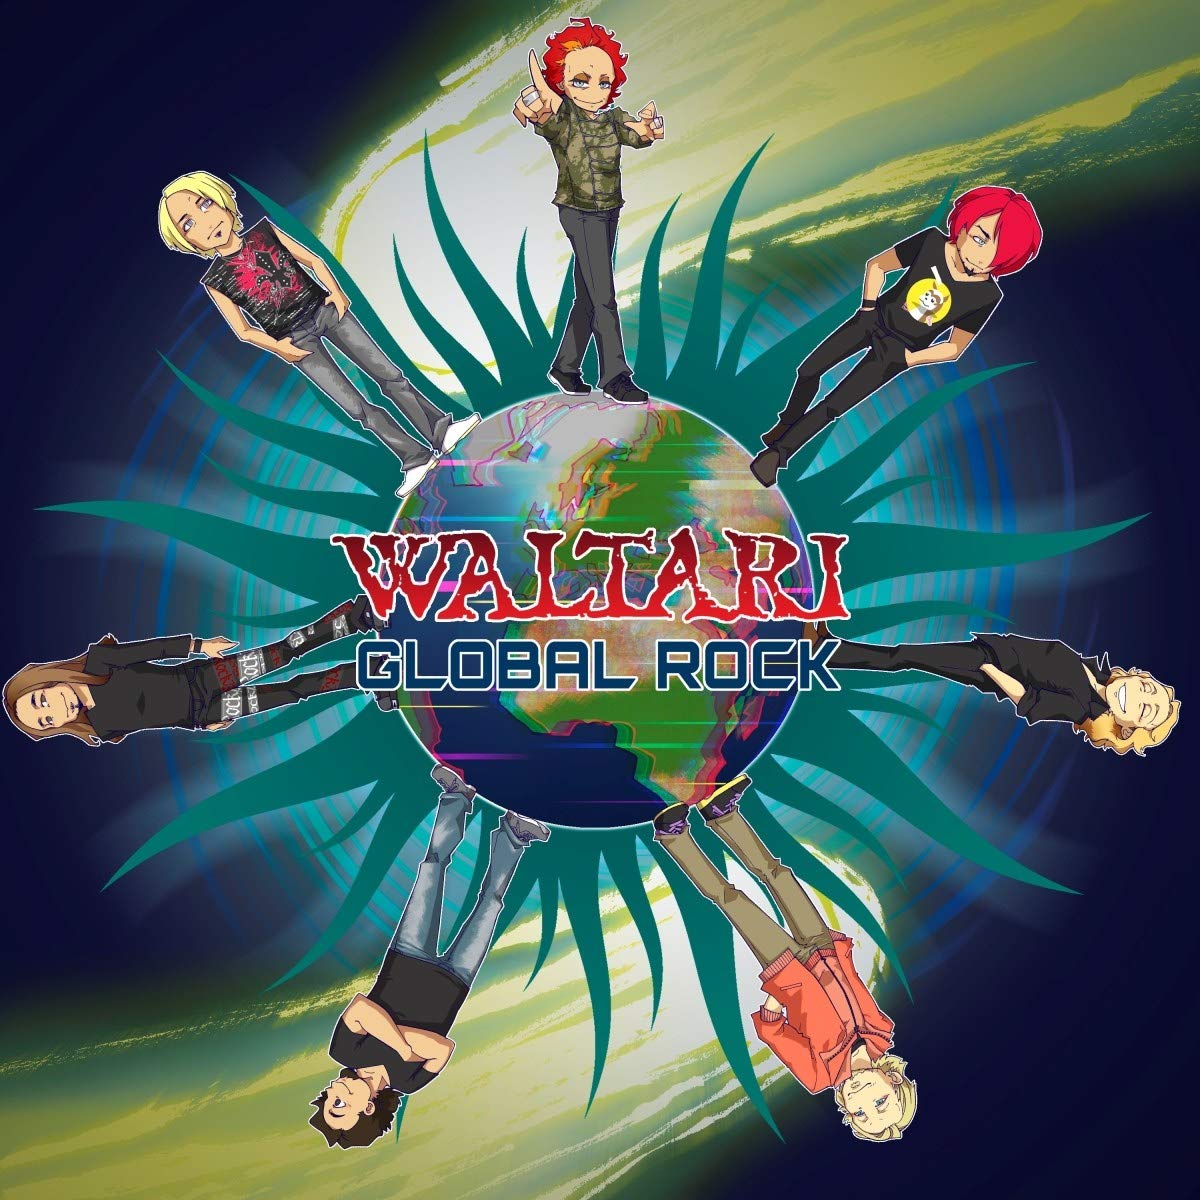 Waltari - Global Rock